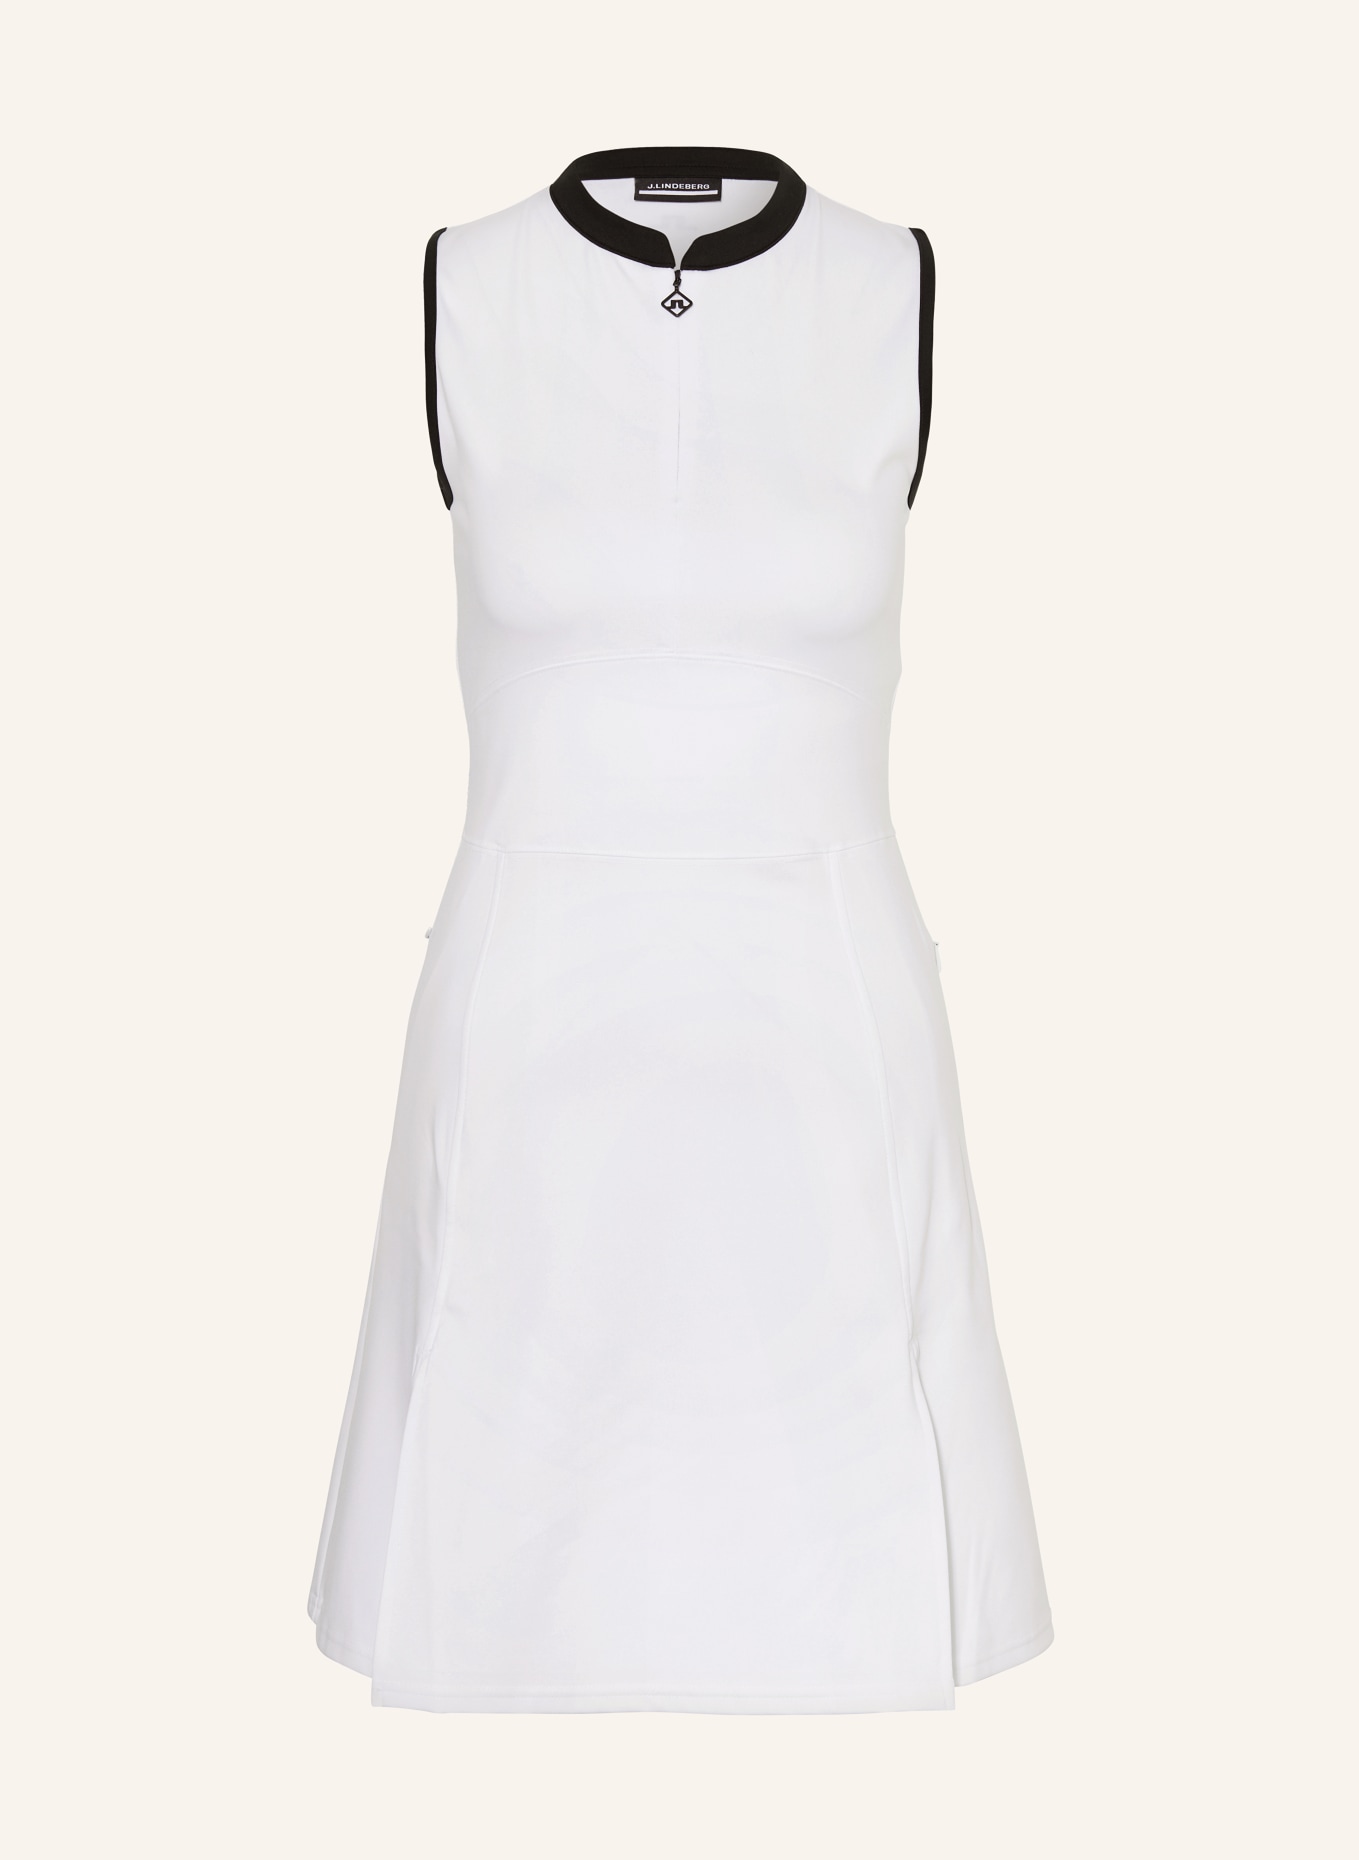 J.LINDEBERG Golf dress, Color: WHITE (Image 1)